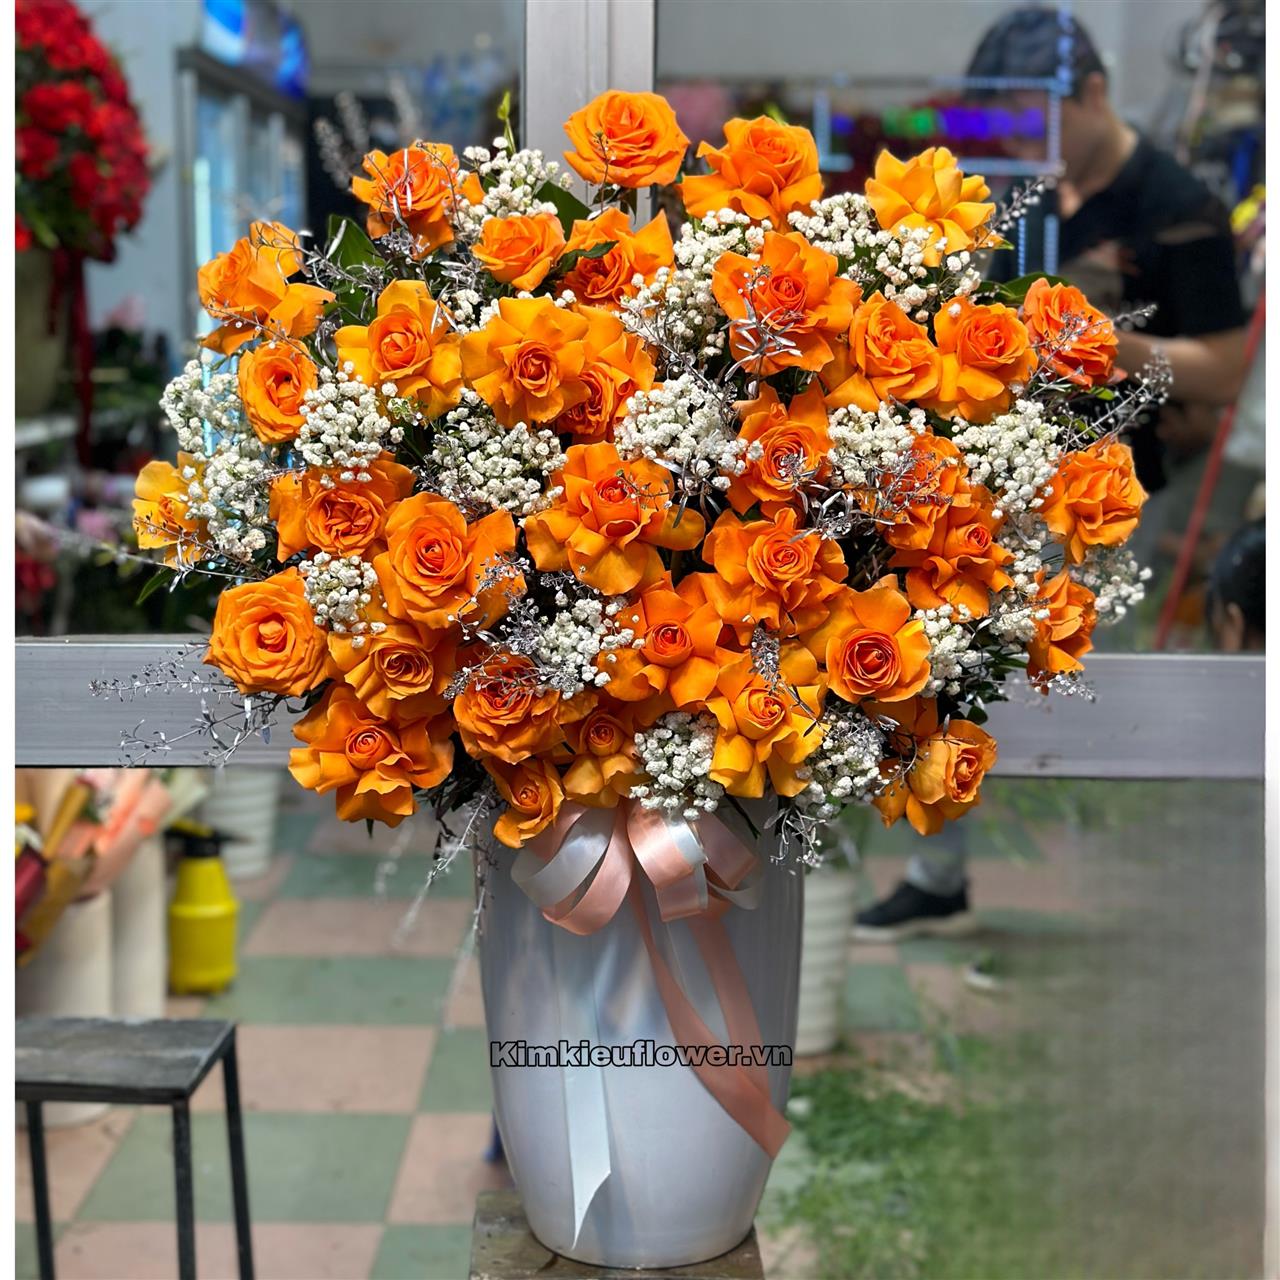 bình hoa cam quốc vương mang đến gia chủ làm ăn phát đạt với tone màu rực rỡ sắc cam